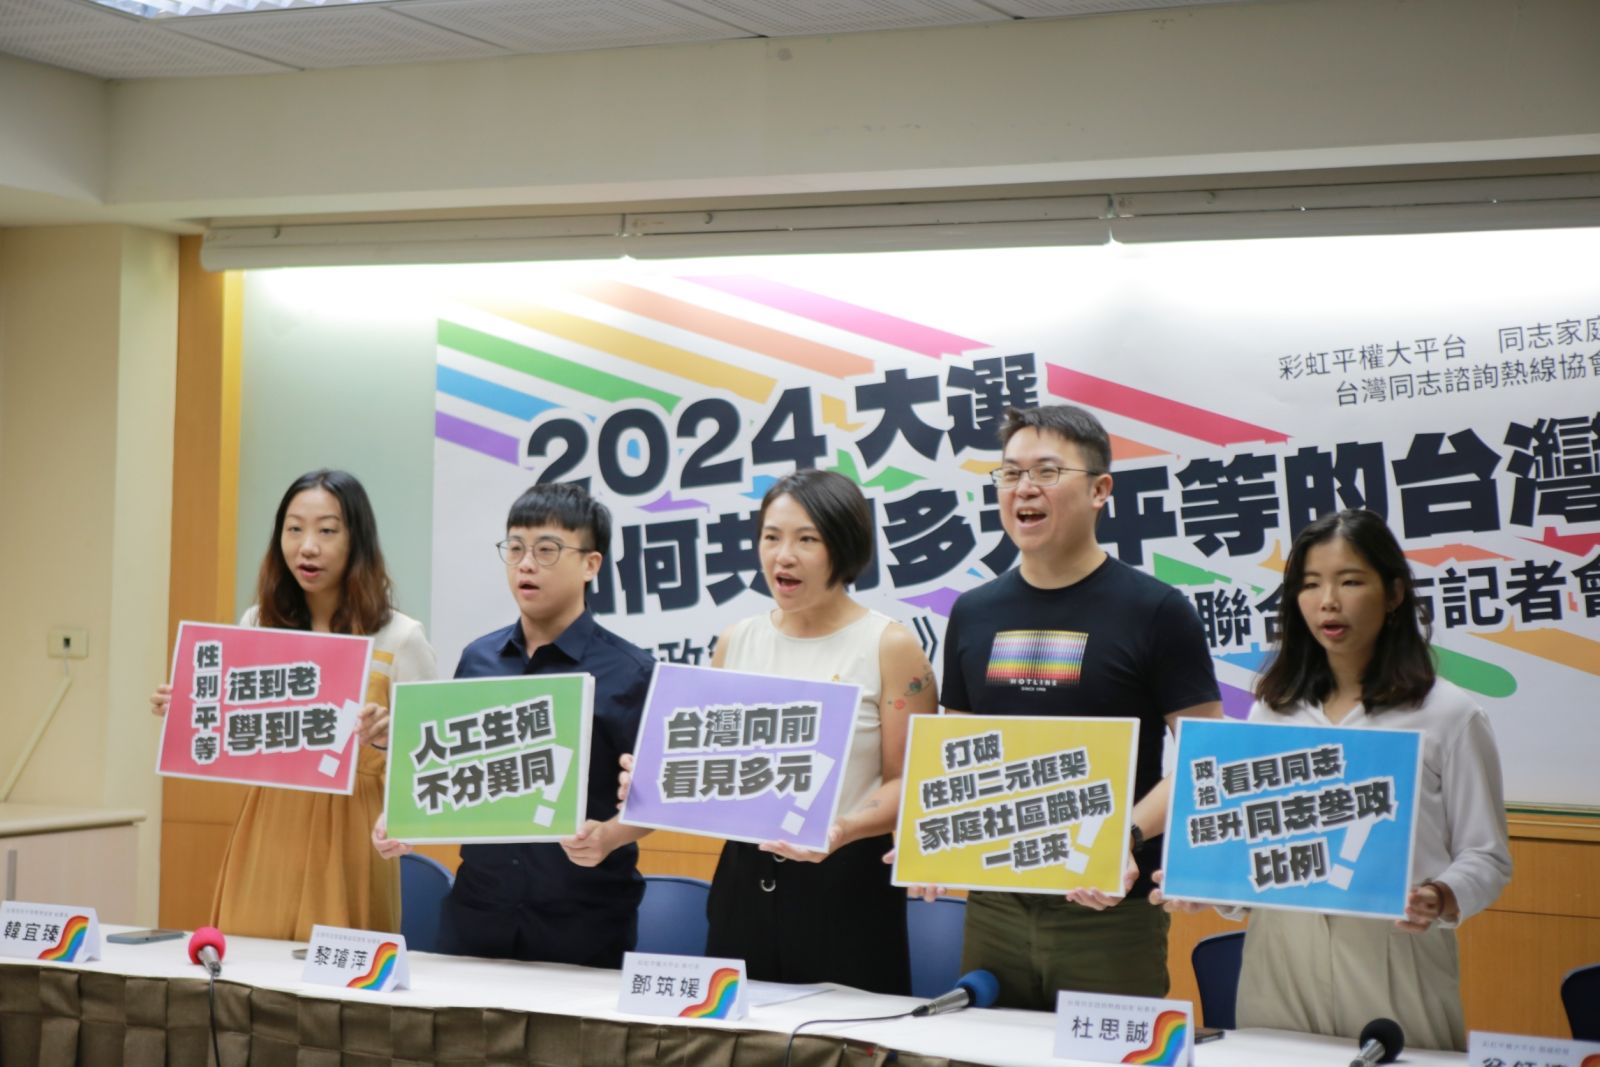 面對即將到來的2024大選，性別團體聯合提出《同志政策白皮書》，喊話「看見多元，台灣向前」。彩虹平權大平台提供